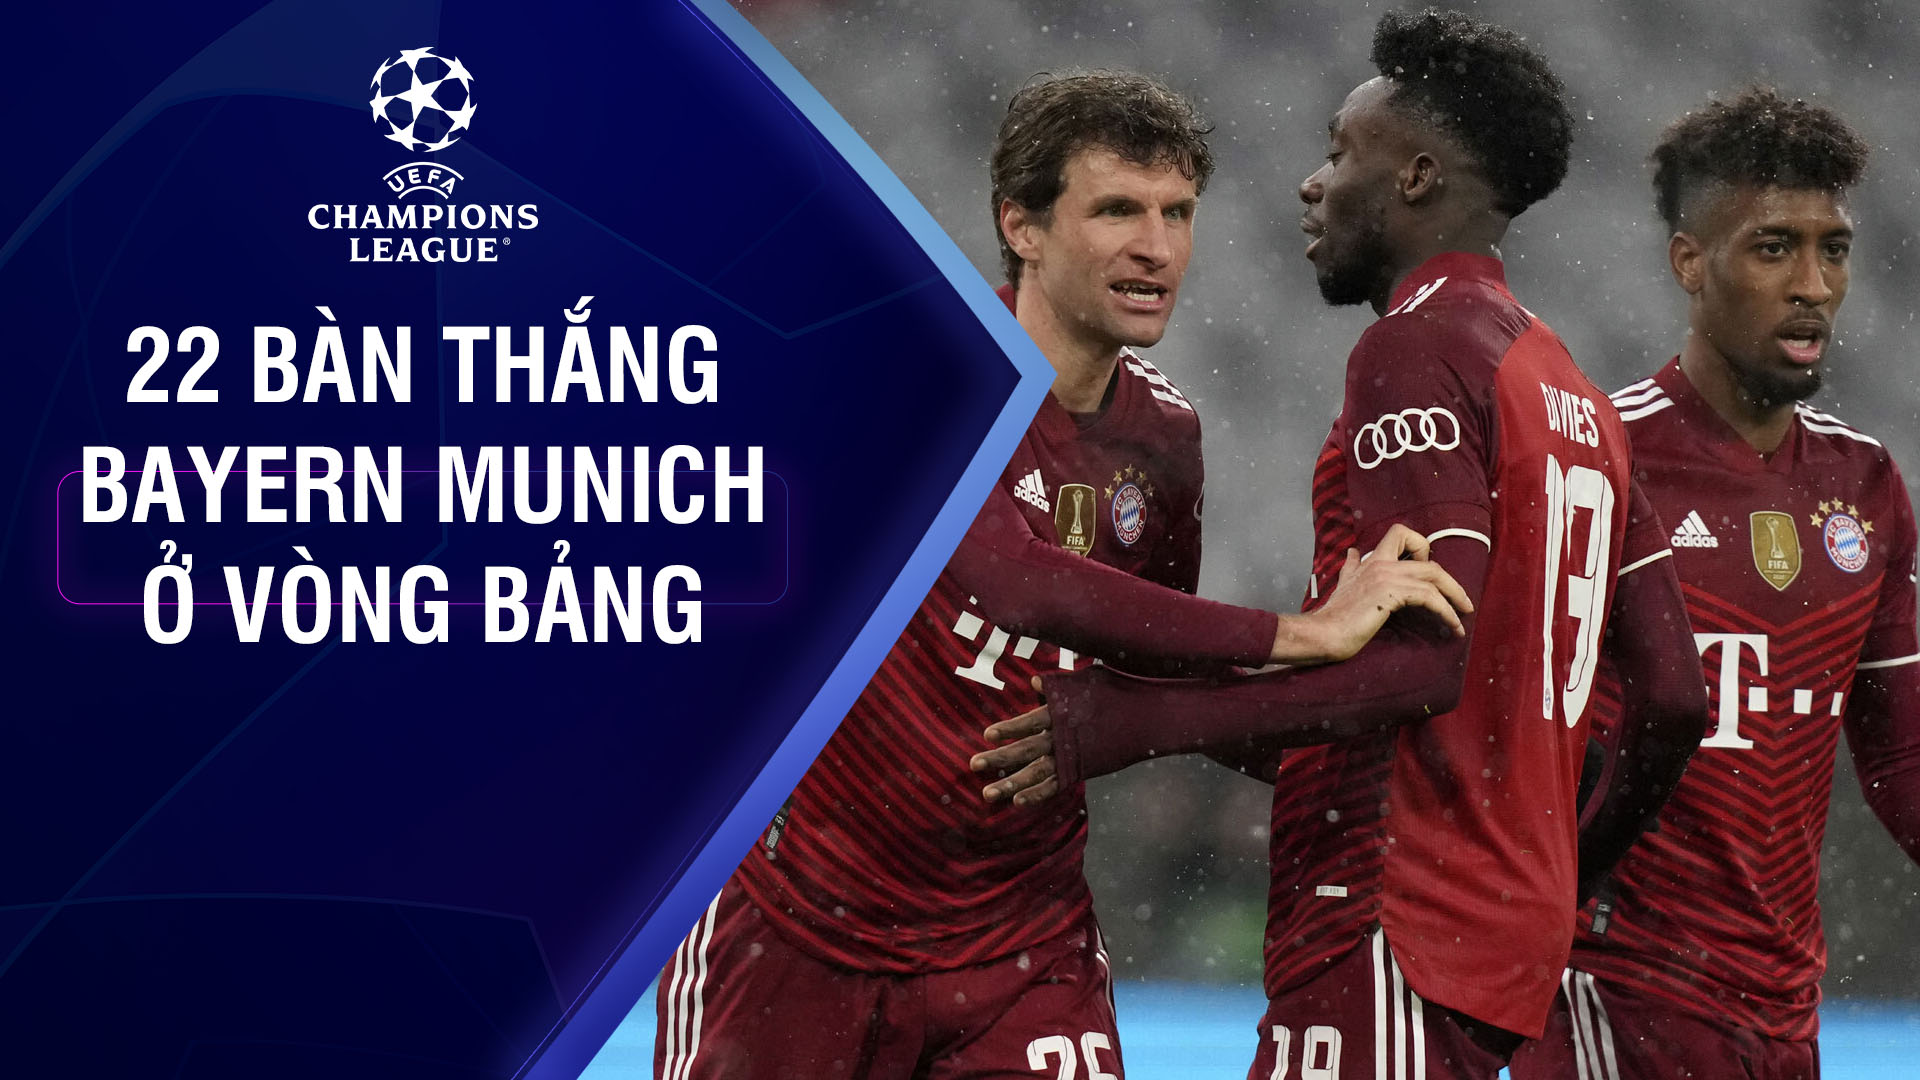 22 bàn thắng của Bayern Munich ở vòng bảng - UEFA Champions League